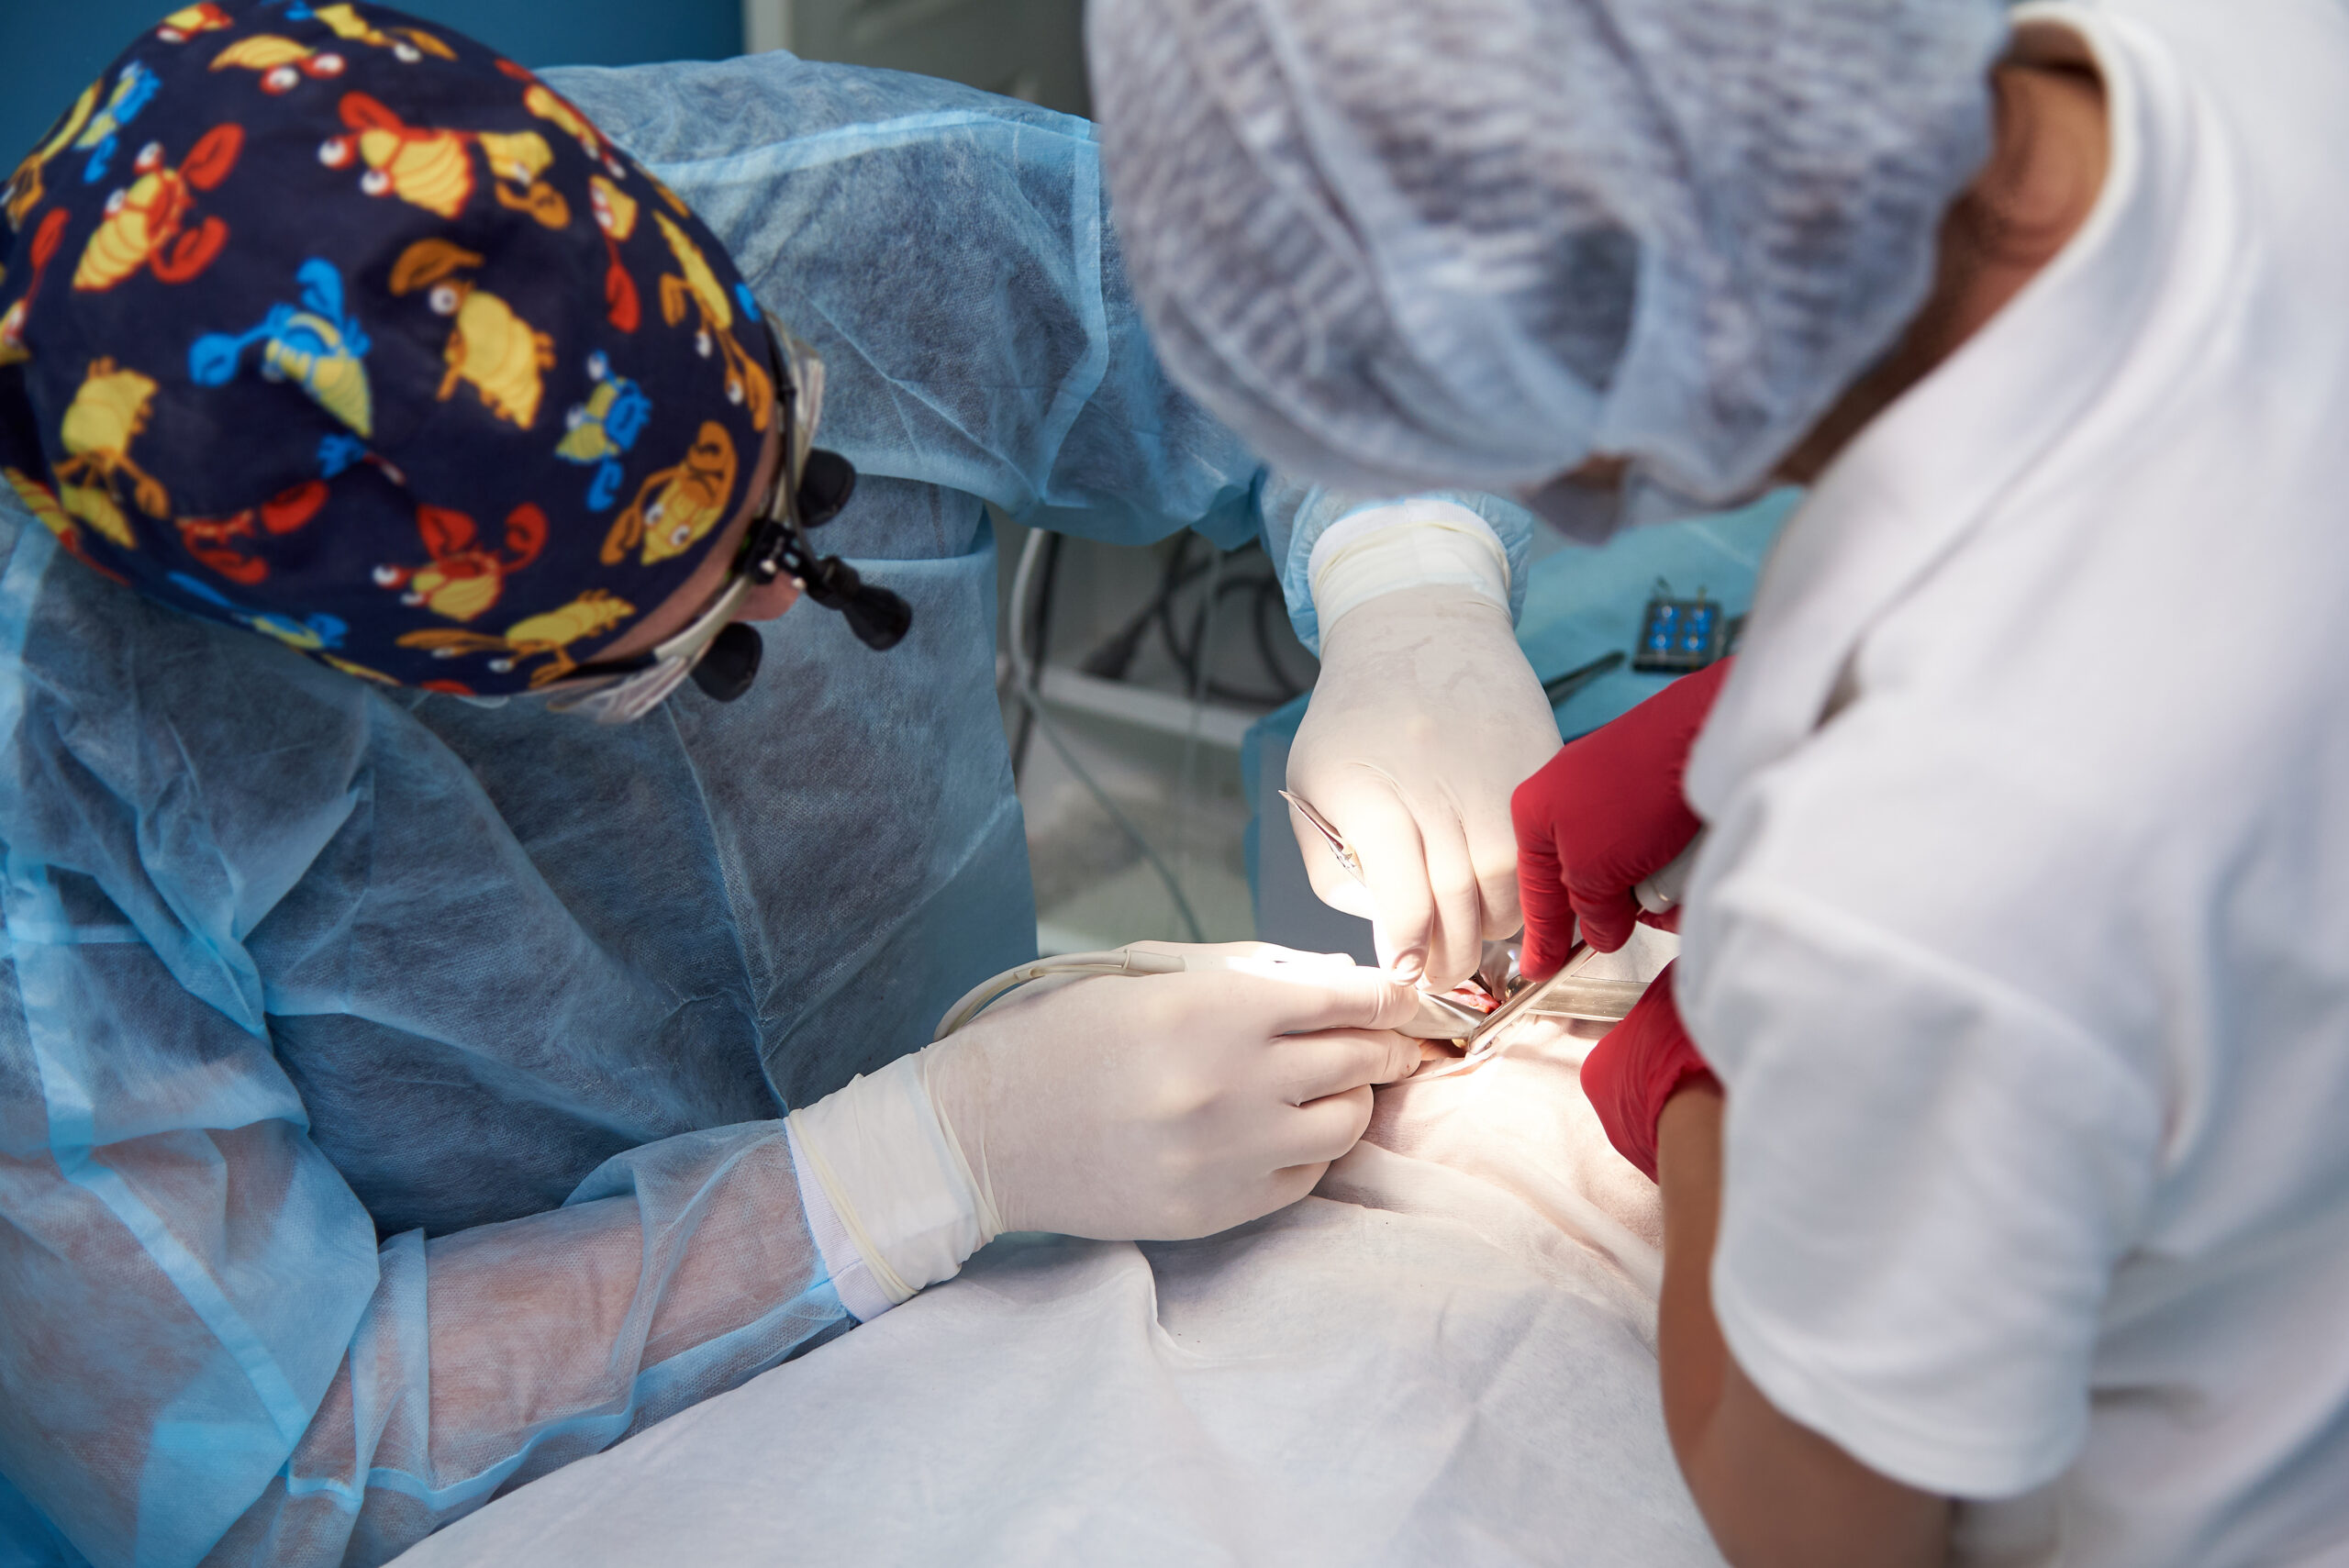 Clínica Santa Sofía del Pacífico | ¿Cómo prepararme para un procedimiento quirúrgico?